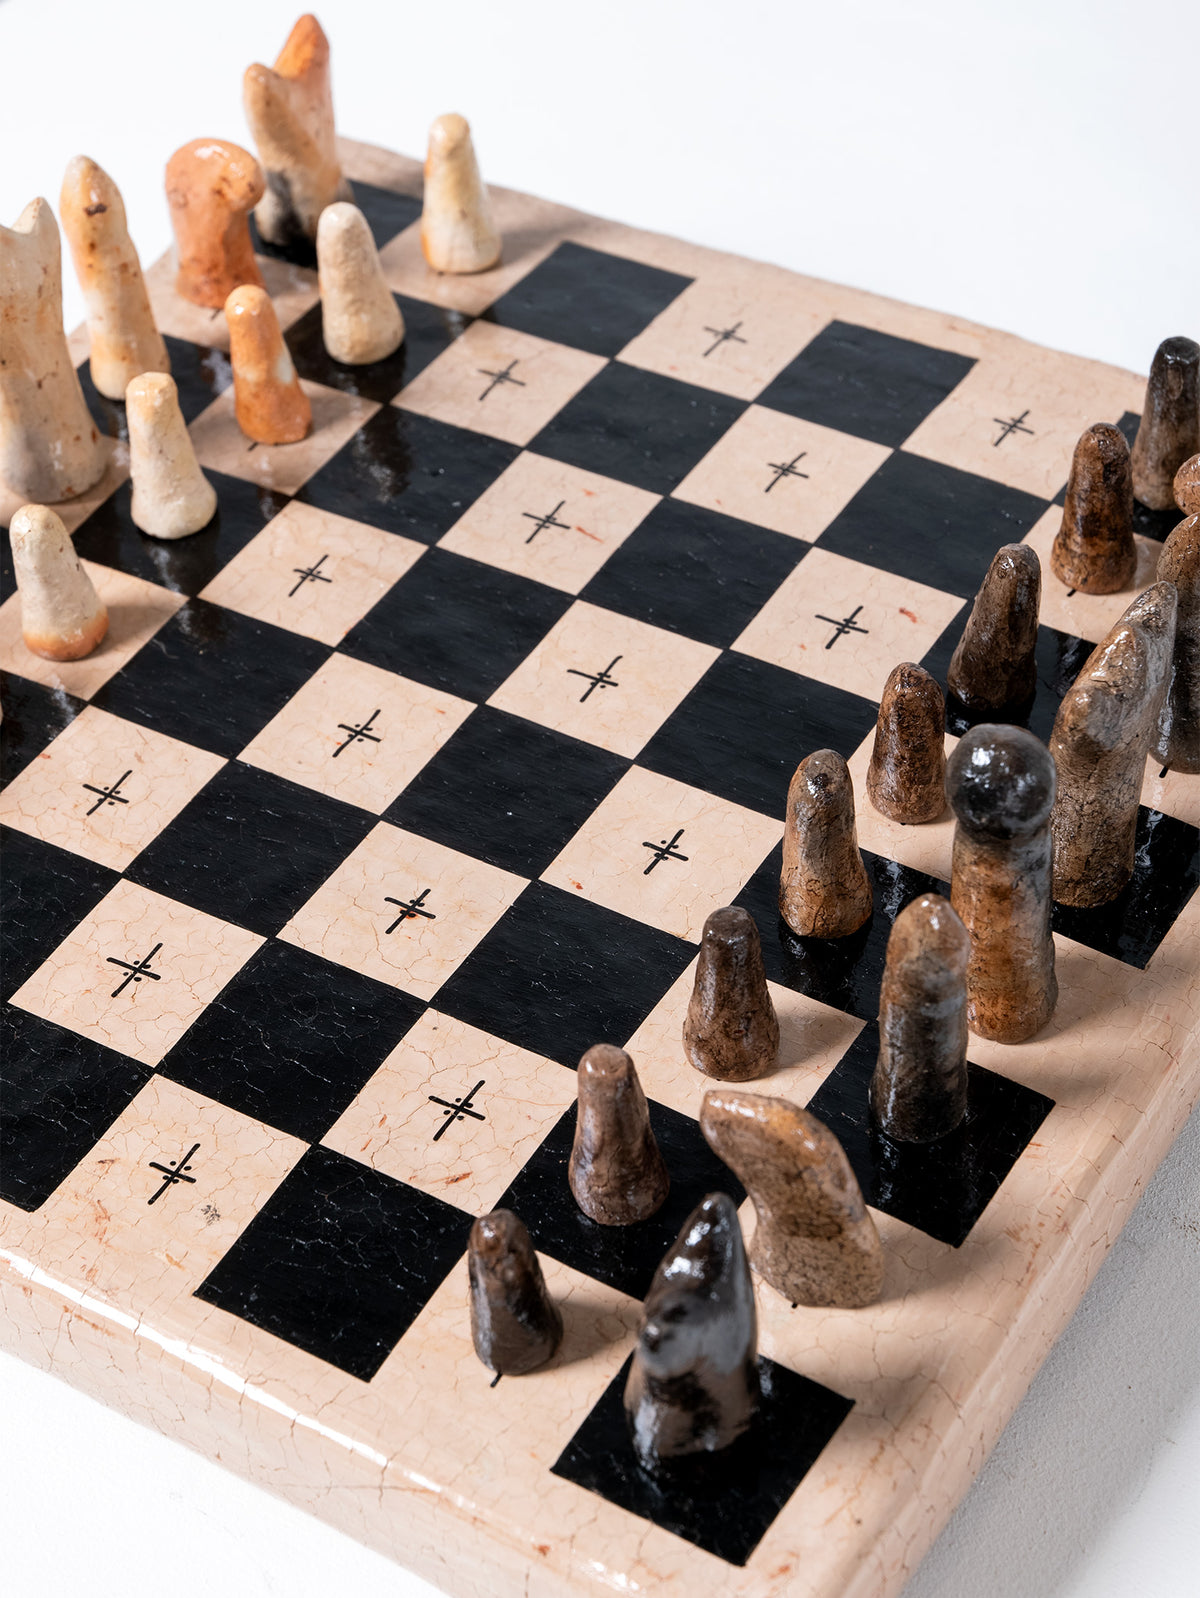 CHICH-BICH Chess